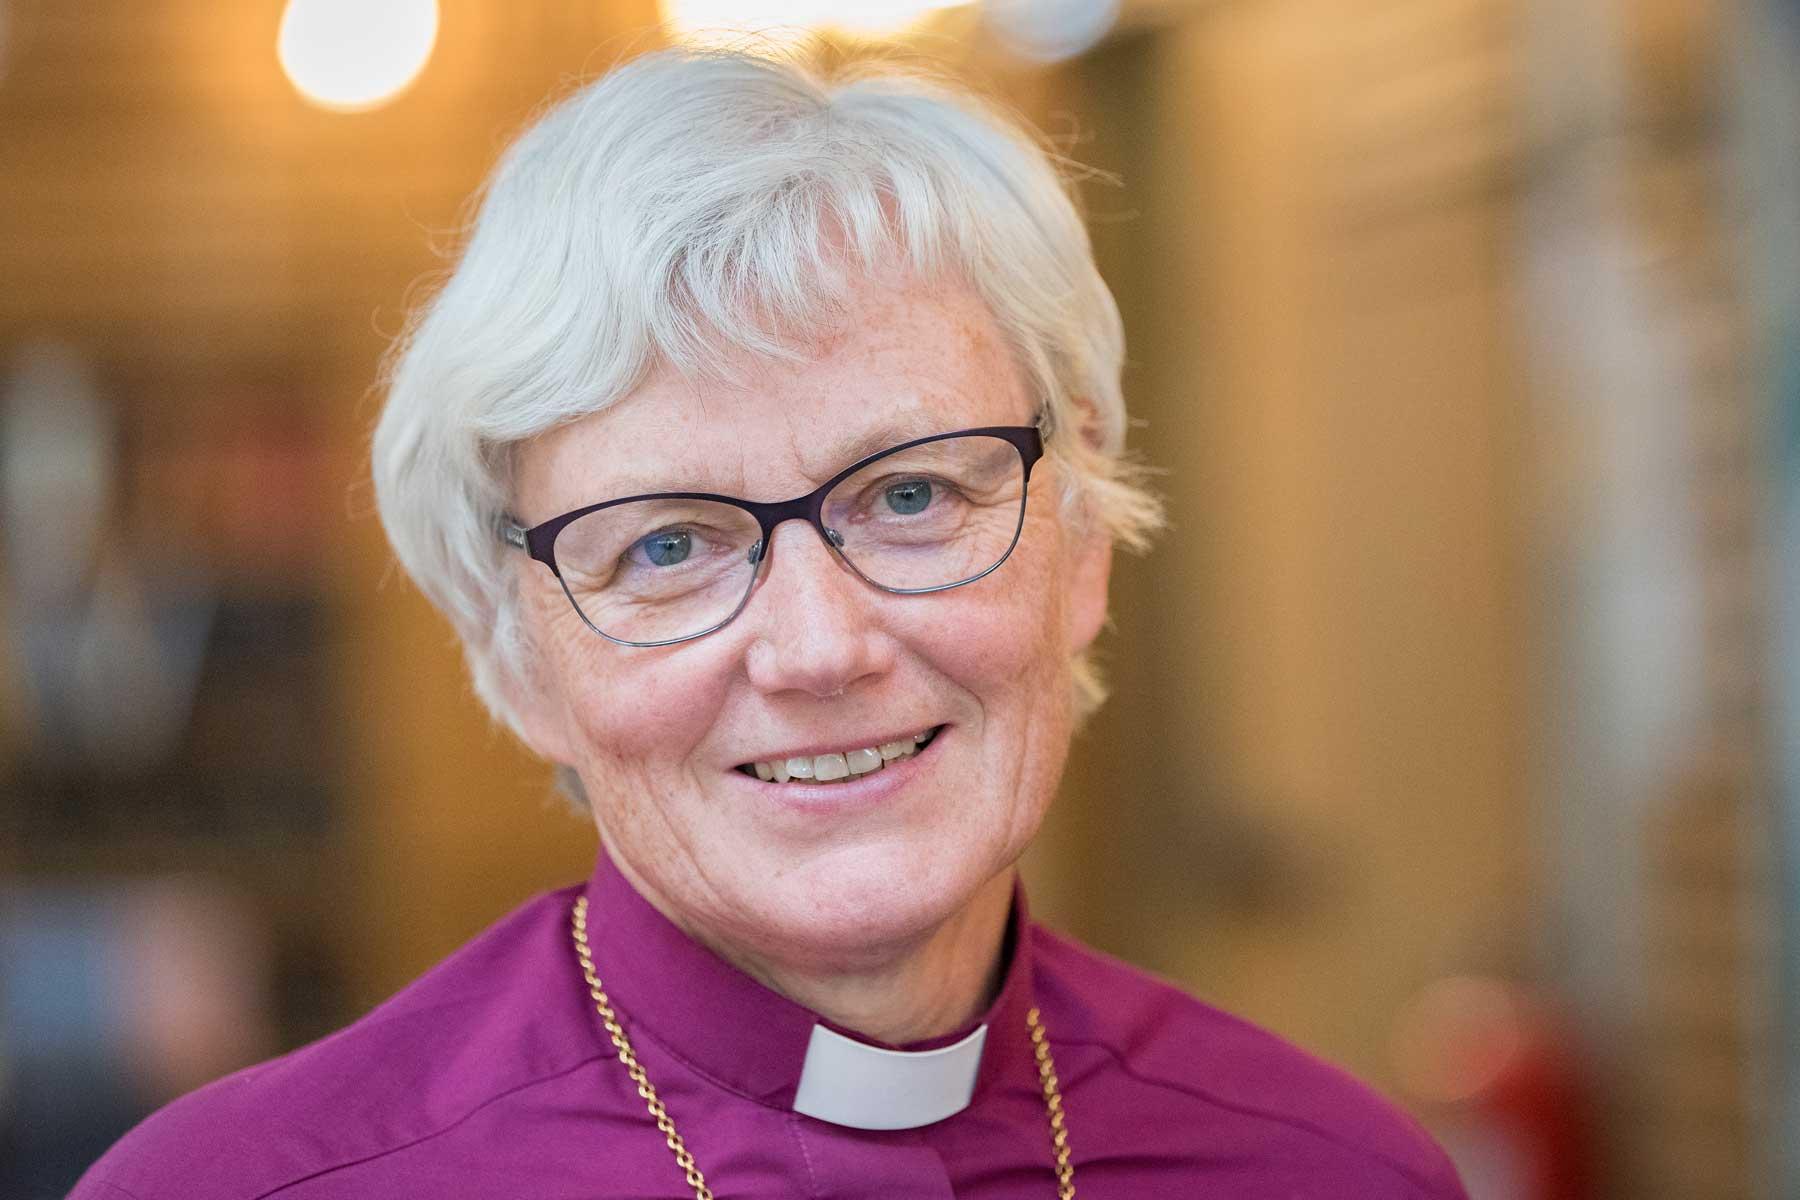 Antje Jackelén ist Erzbischöfin der Schwedischen Kirche und LWB-Vizepräsidentin für die Region Nordische Länder. Foto: LWB/Albin Hillert